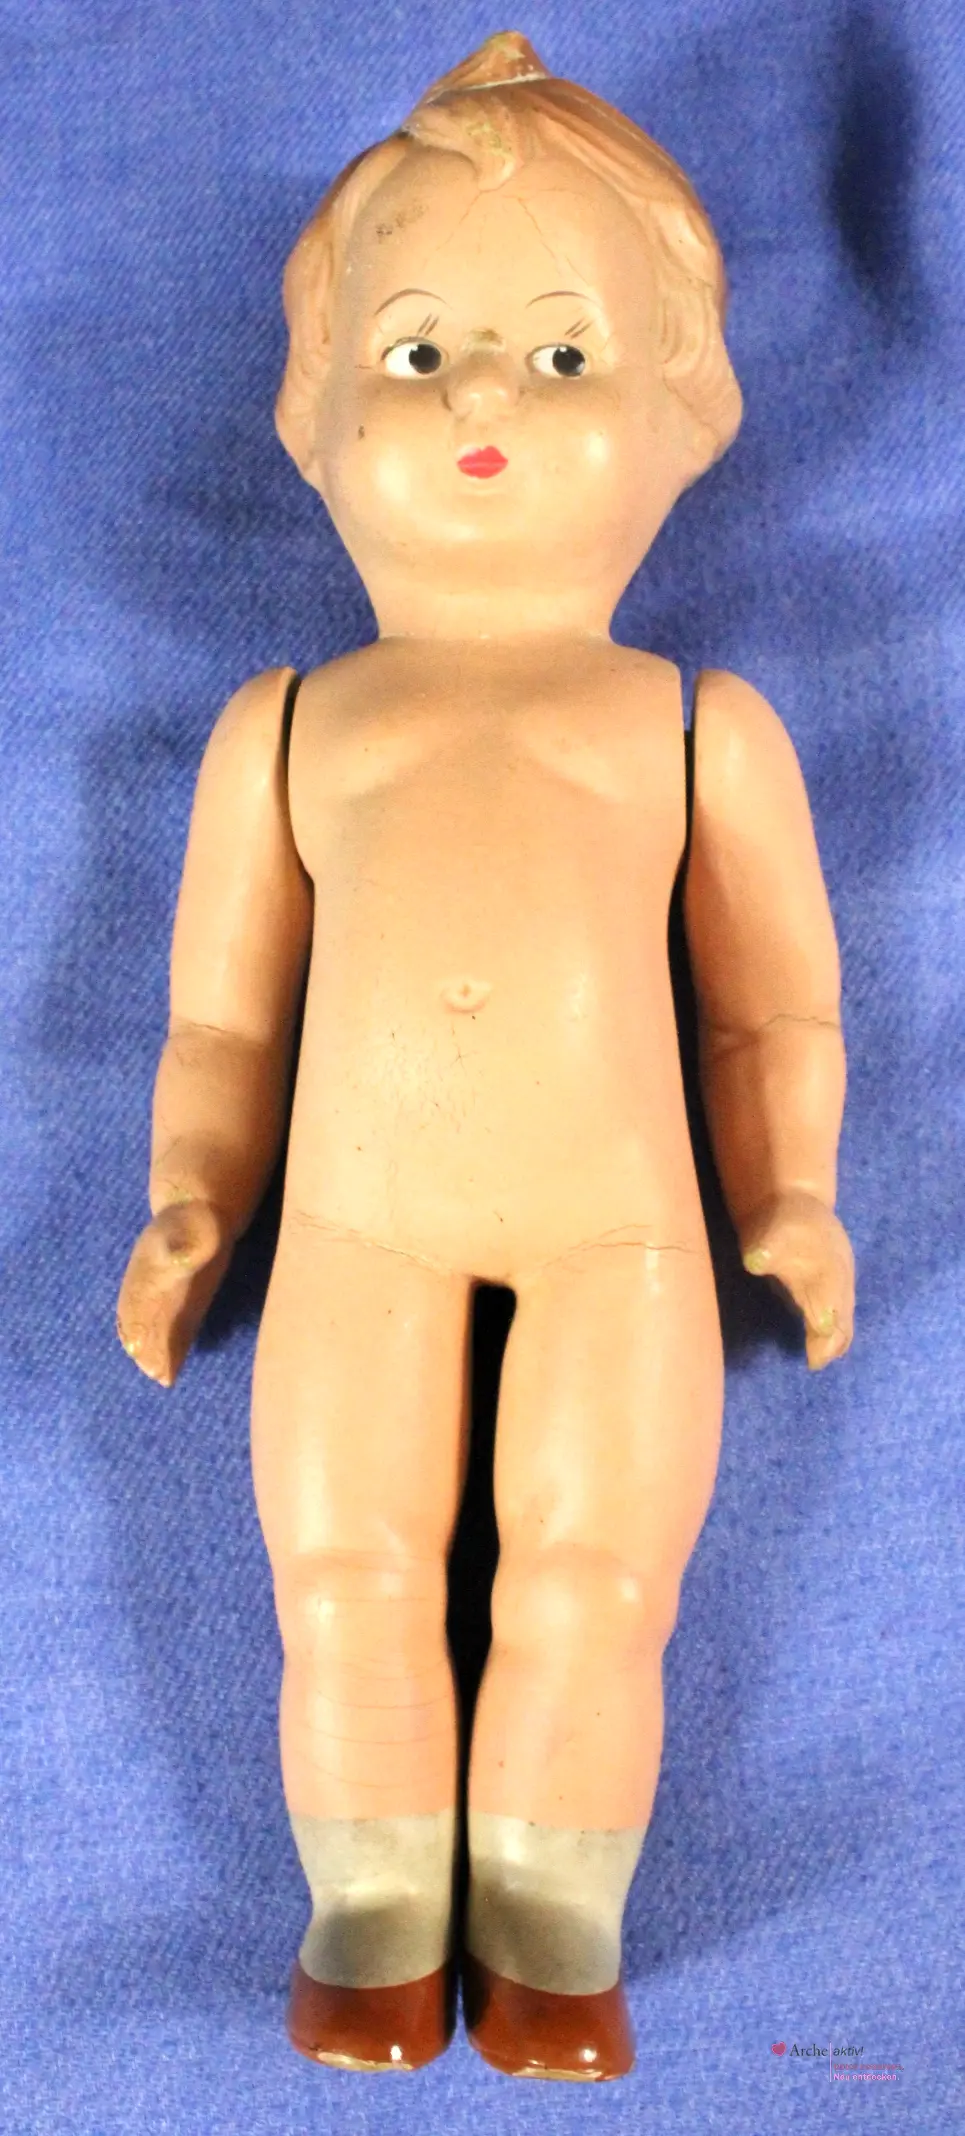 Vintage Puppe Steho, unbekleidet, für Sammler, gebraucht